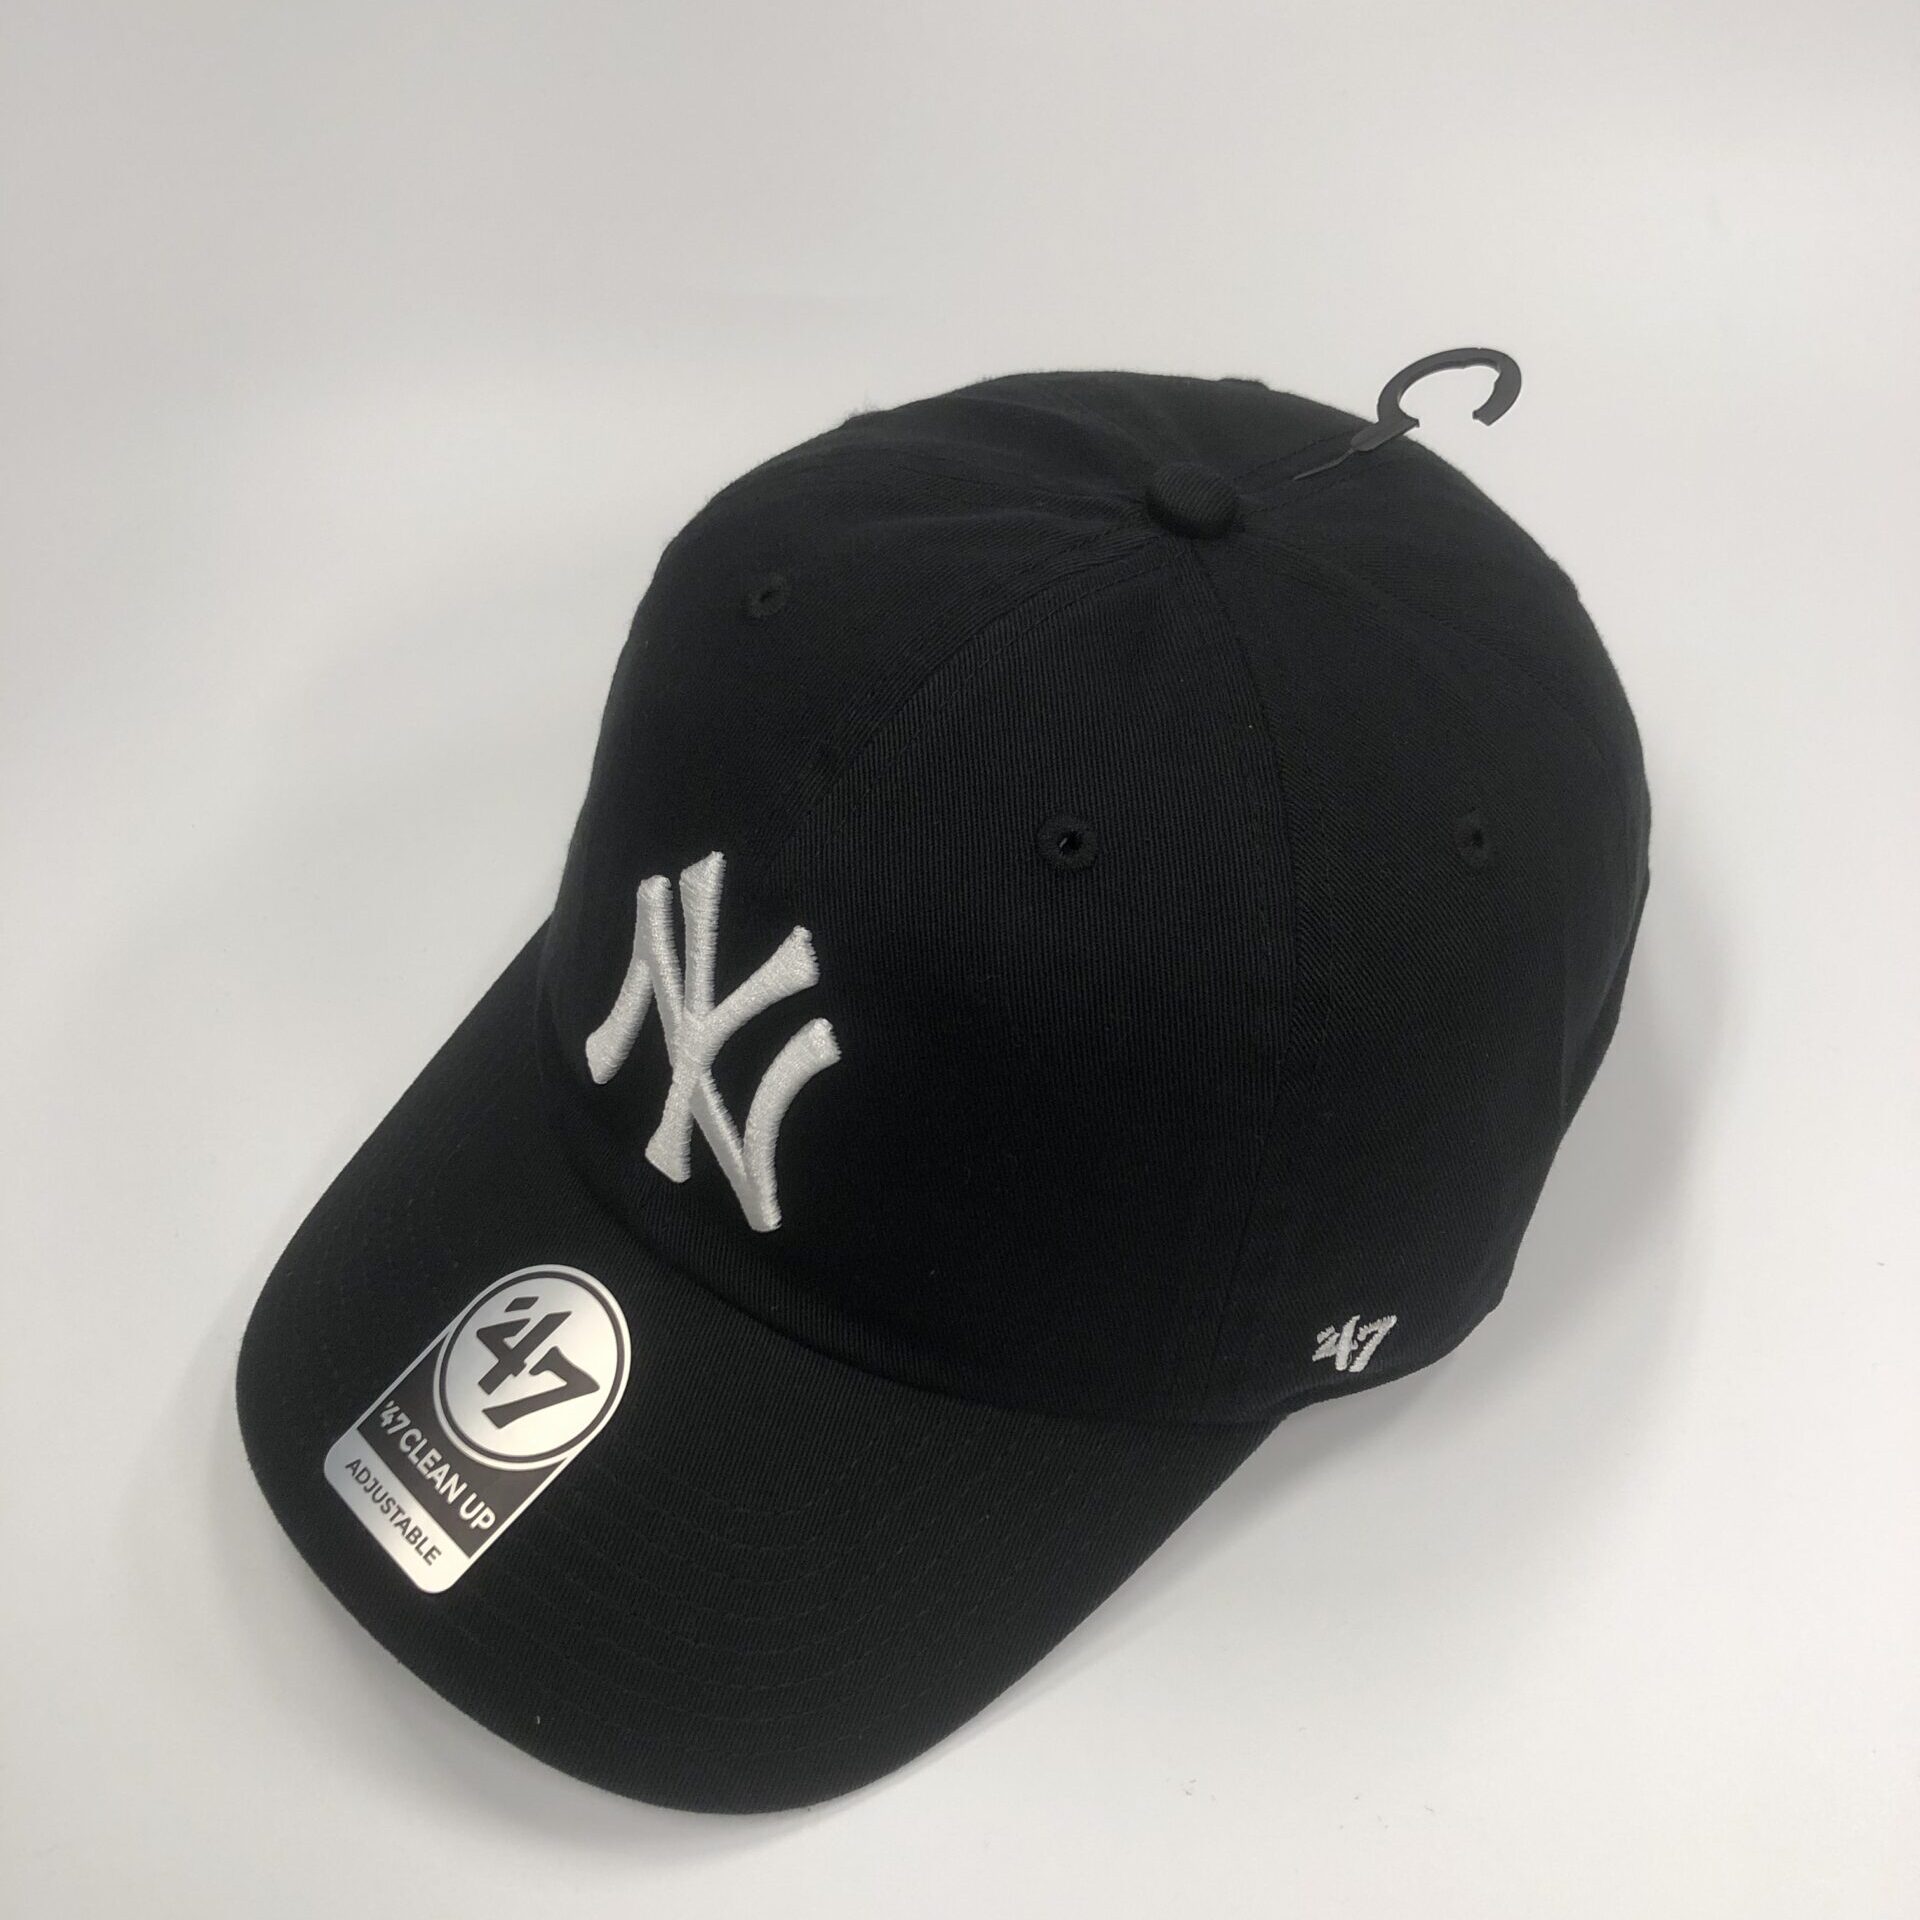 Yankees’47 CLEAN UP Black